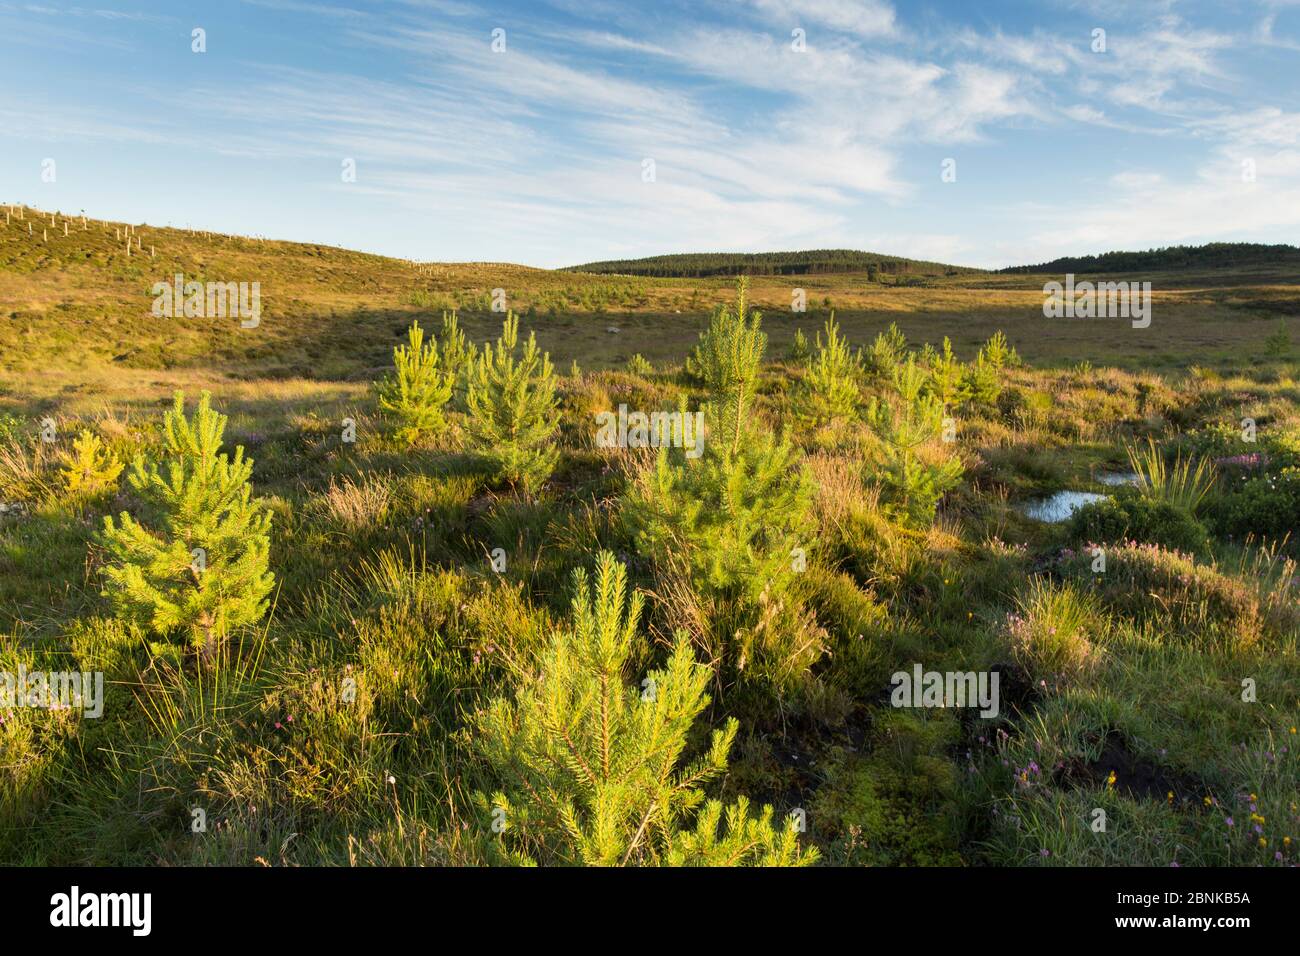 Gepflanzte Kiefernspelzen (Pinus sylvestris) wachsen in einem Gebiet von nwly bepflanzten Wäldern in der Nähe von Duthill, Cairngorms National Park, Schottland, Großbritannien, Juli 2016 Stockfoto